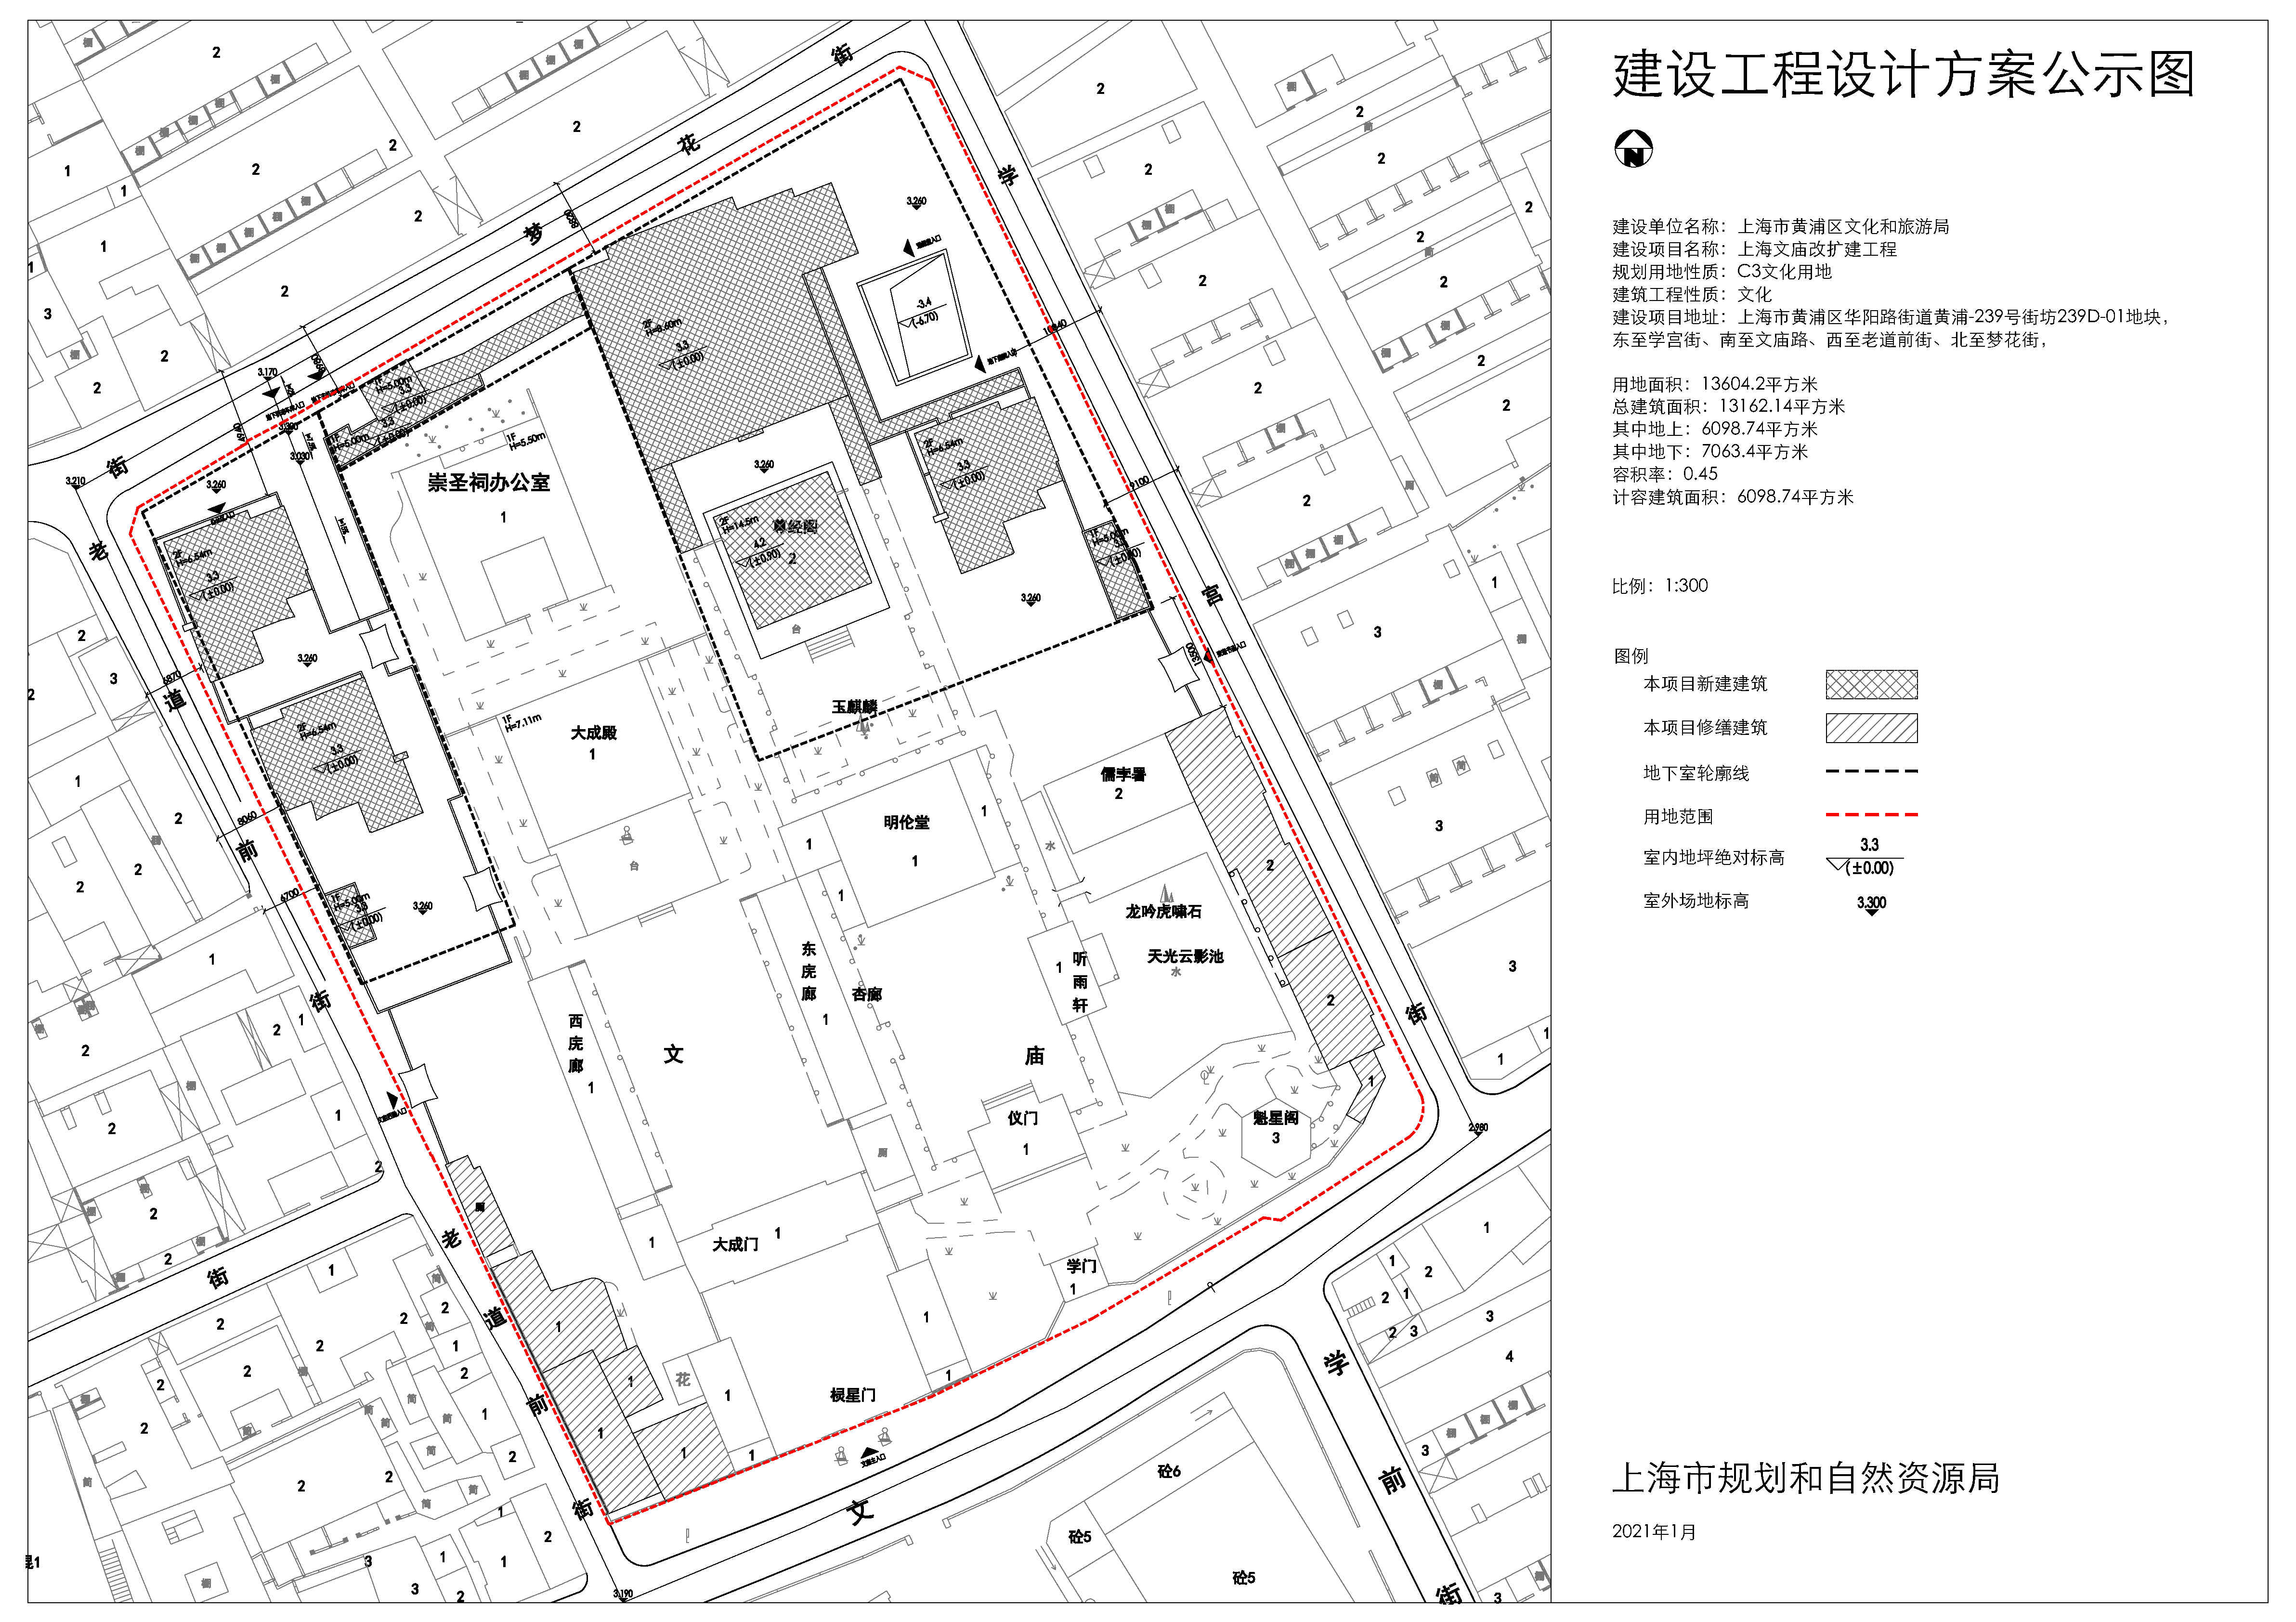 2021-01-25 市规划资源局 一,建设用地范围:黄浦区老西门街道,东至学